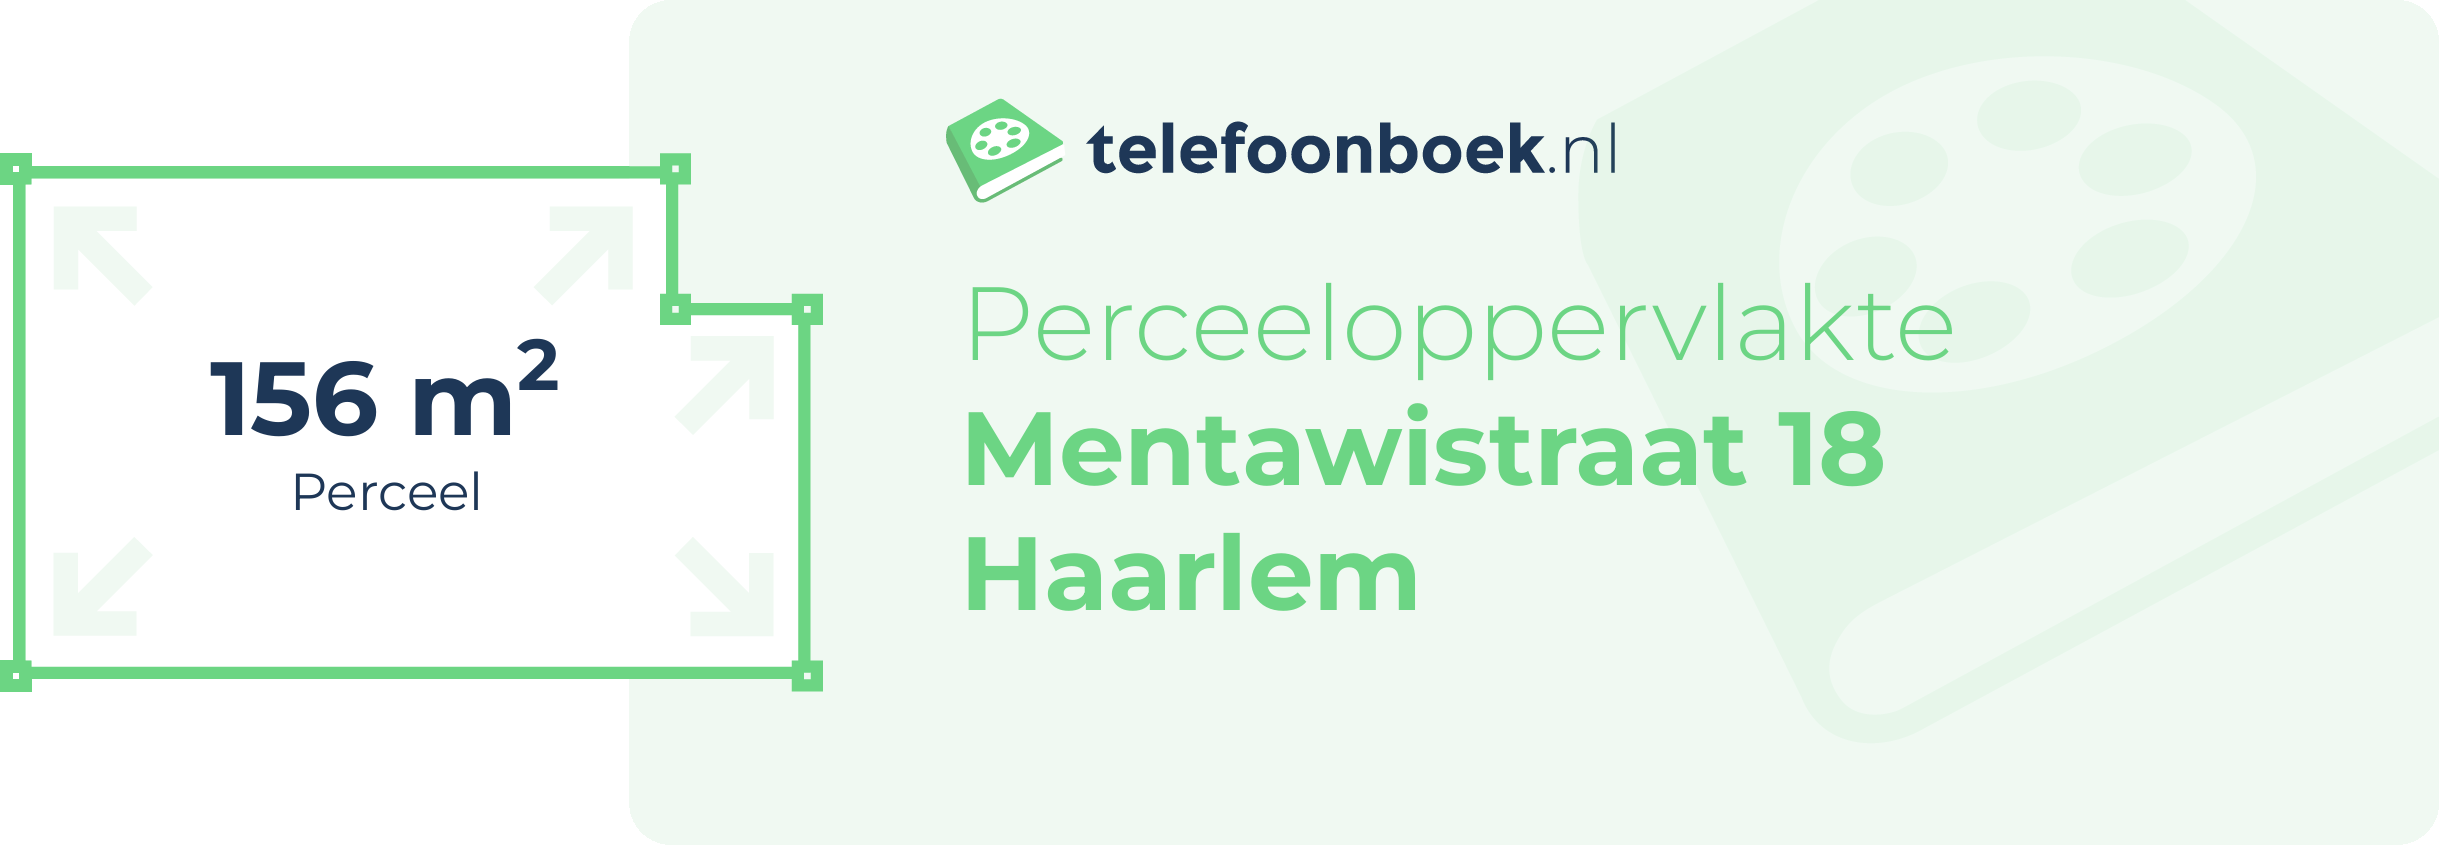 Perceeloppervlakte Mentawistraat 18 Haarlem